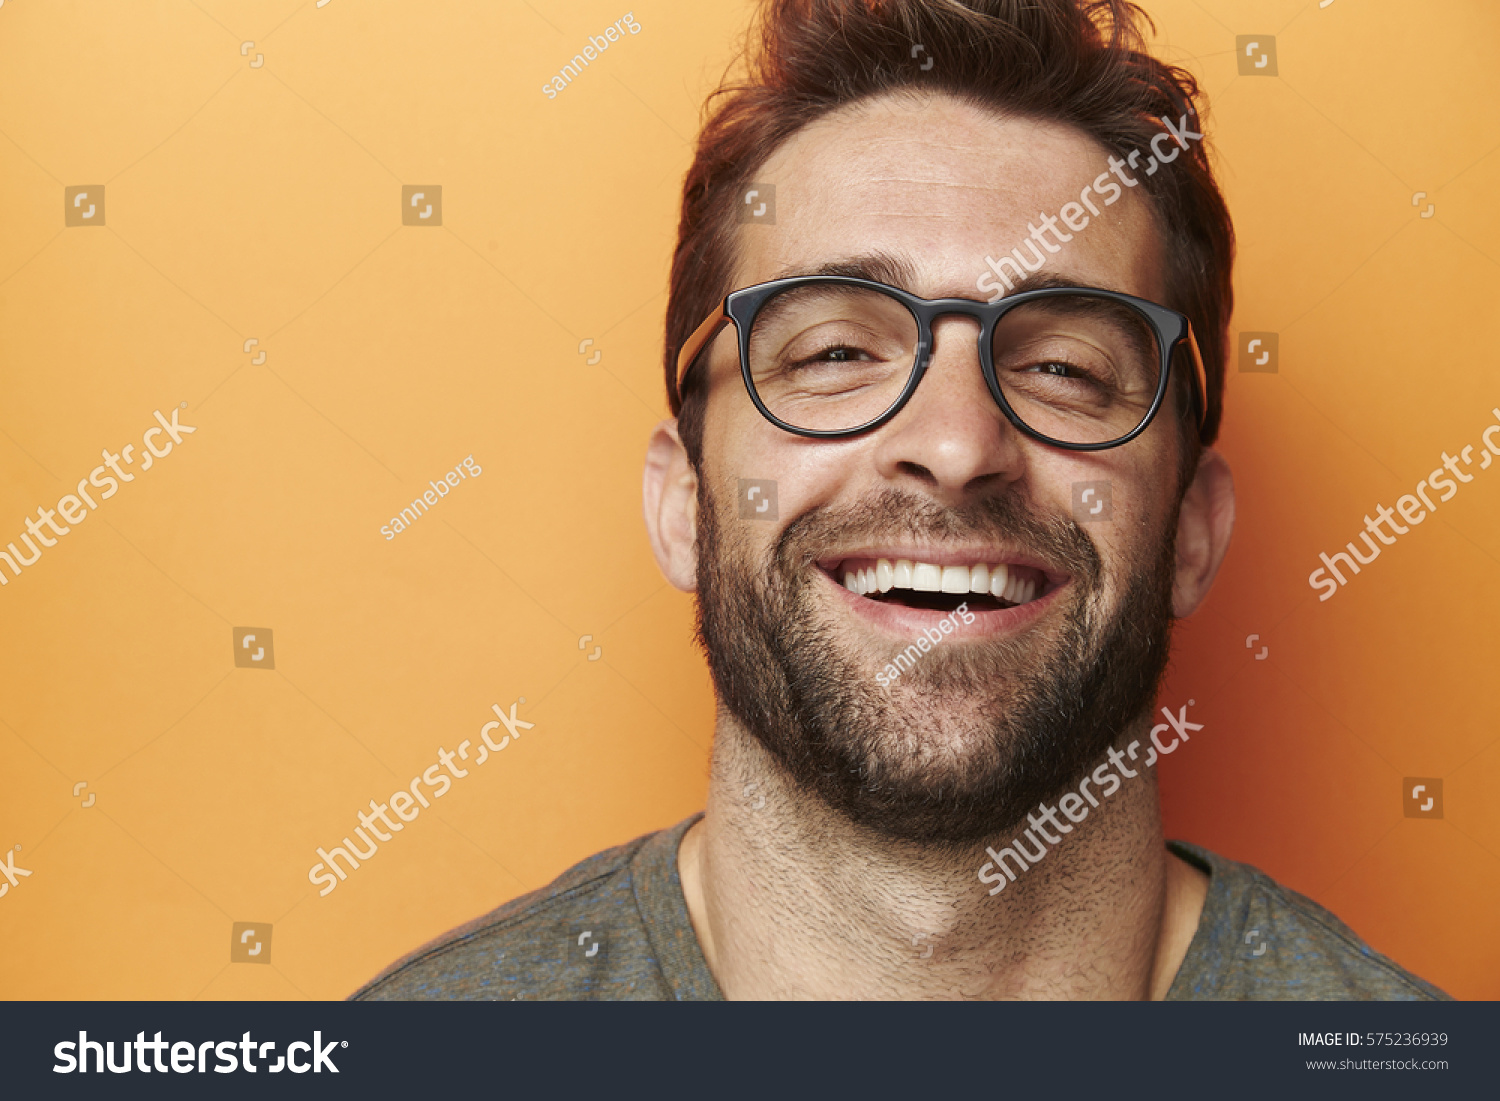 Man laughing in orange studio, close up #575236939